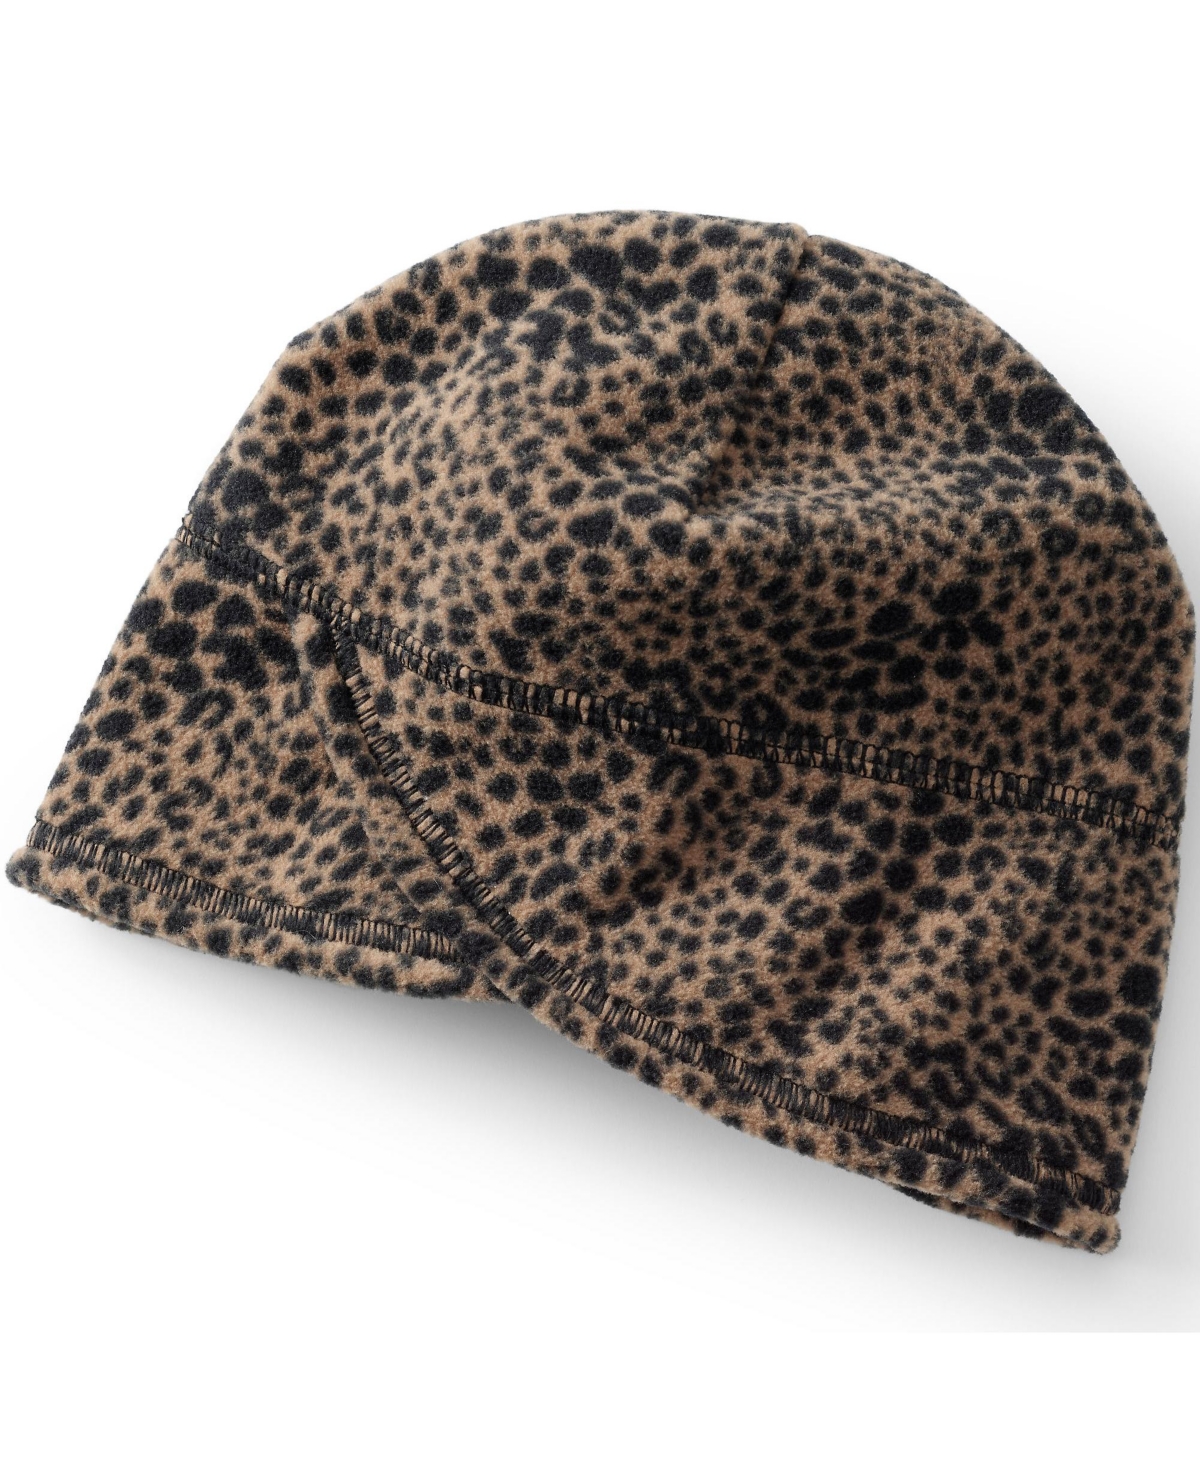 Women's Fleece Winter Beanie Hat - Warm brown spotted leopard